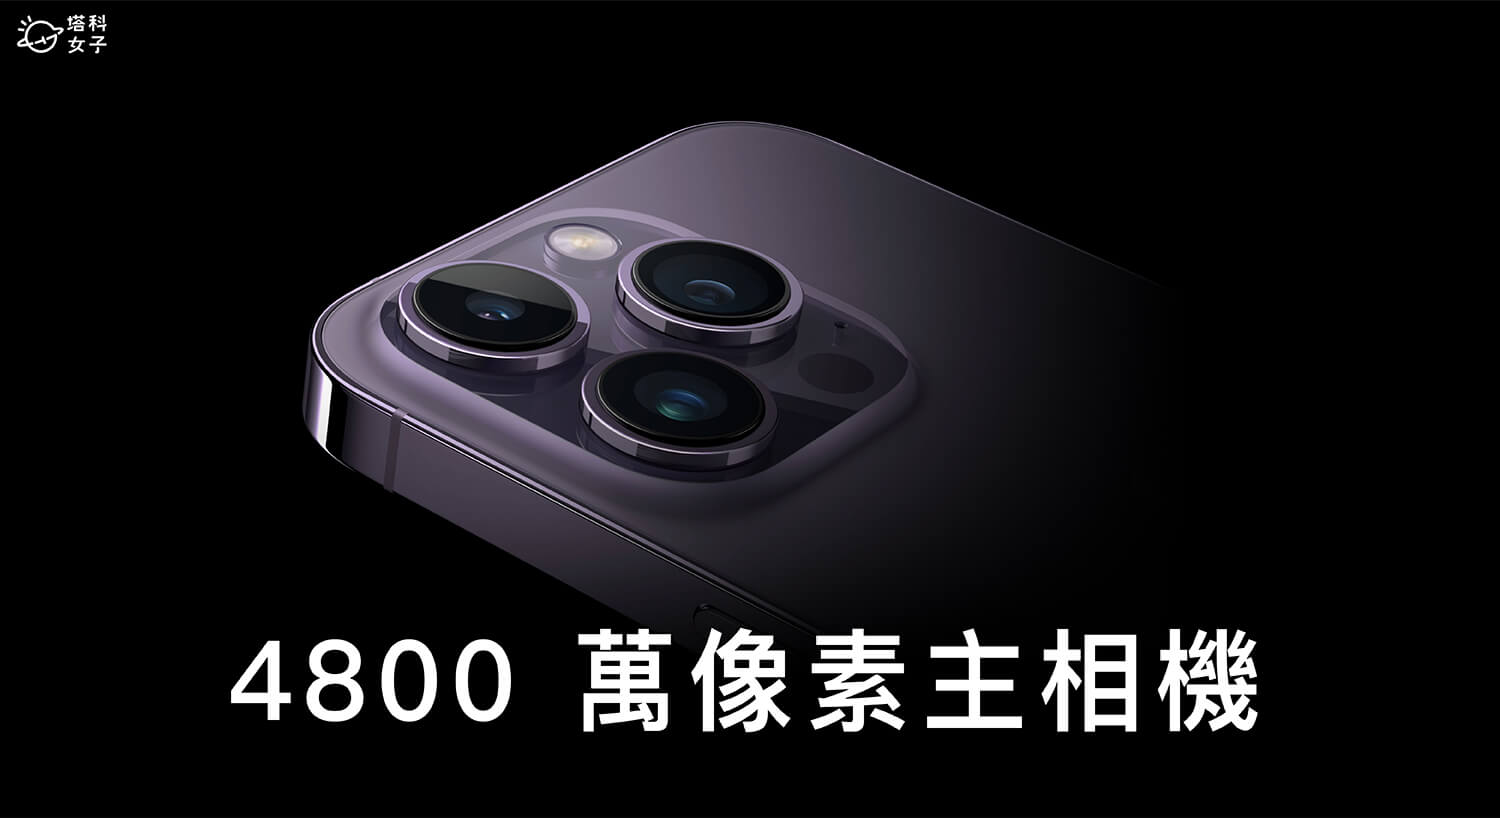 iPhone 14 Pro 功能設定：4800 萬像素主相機